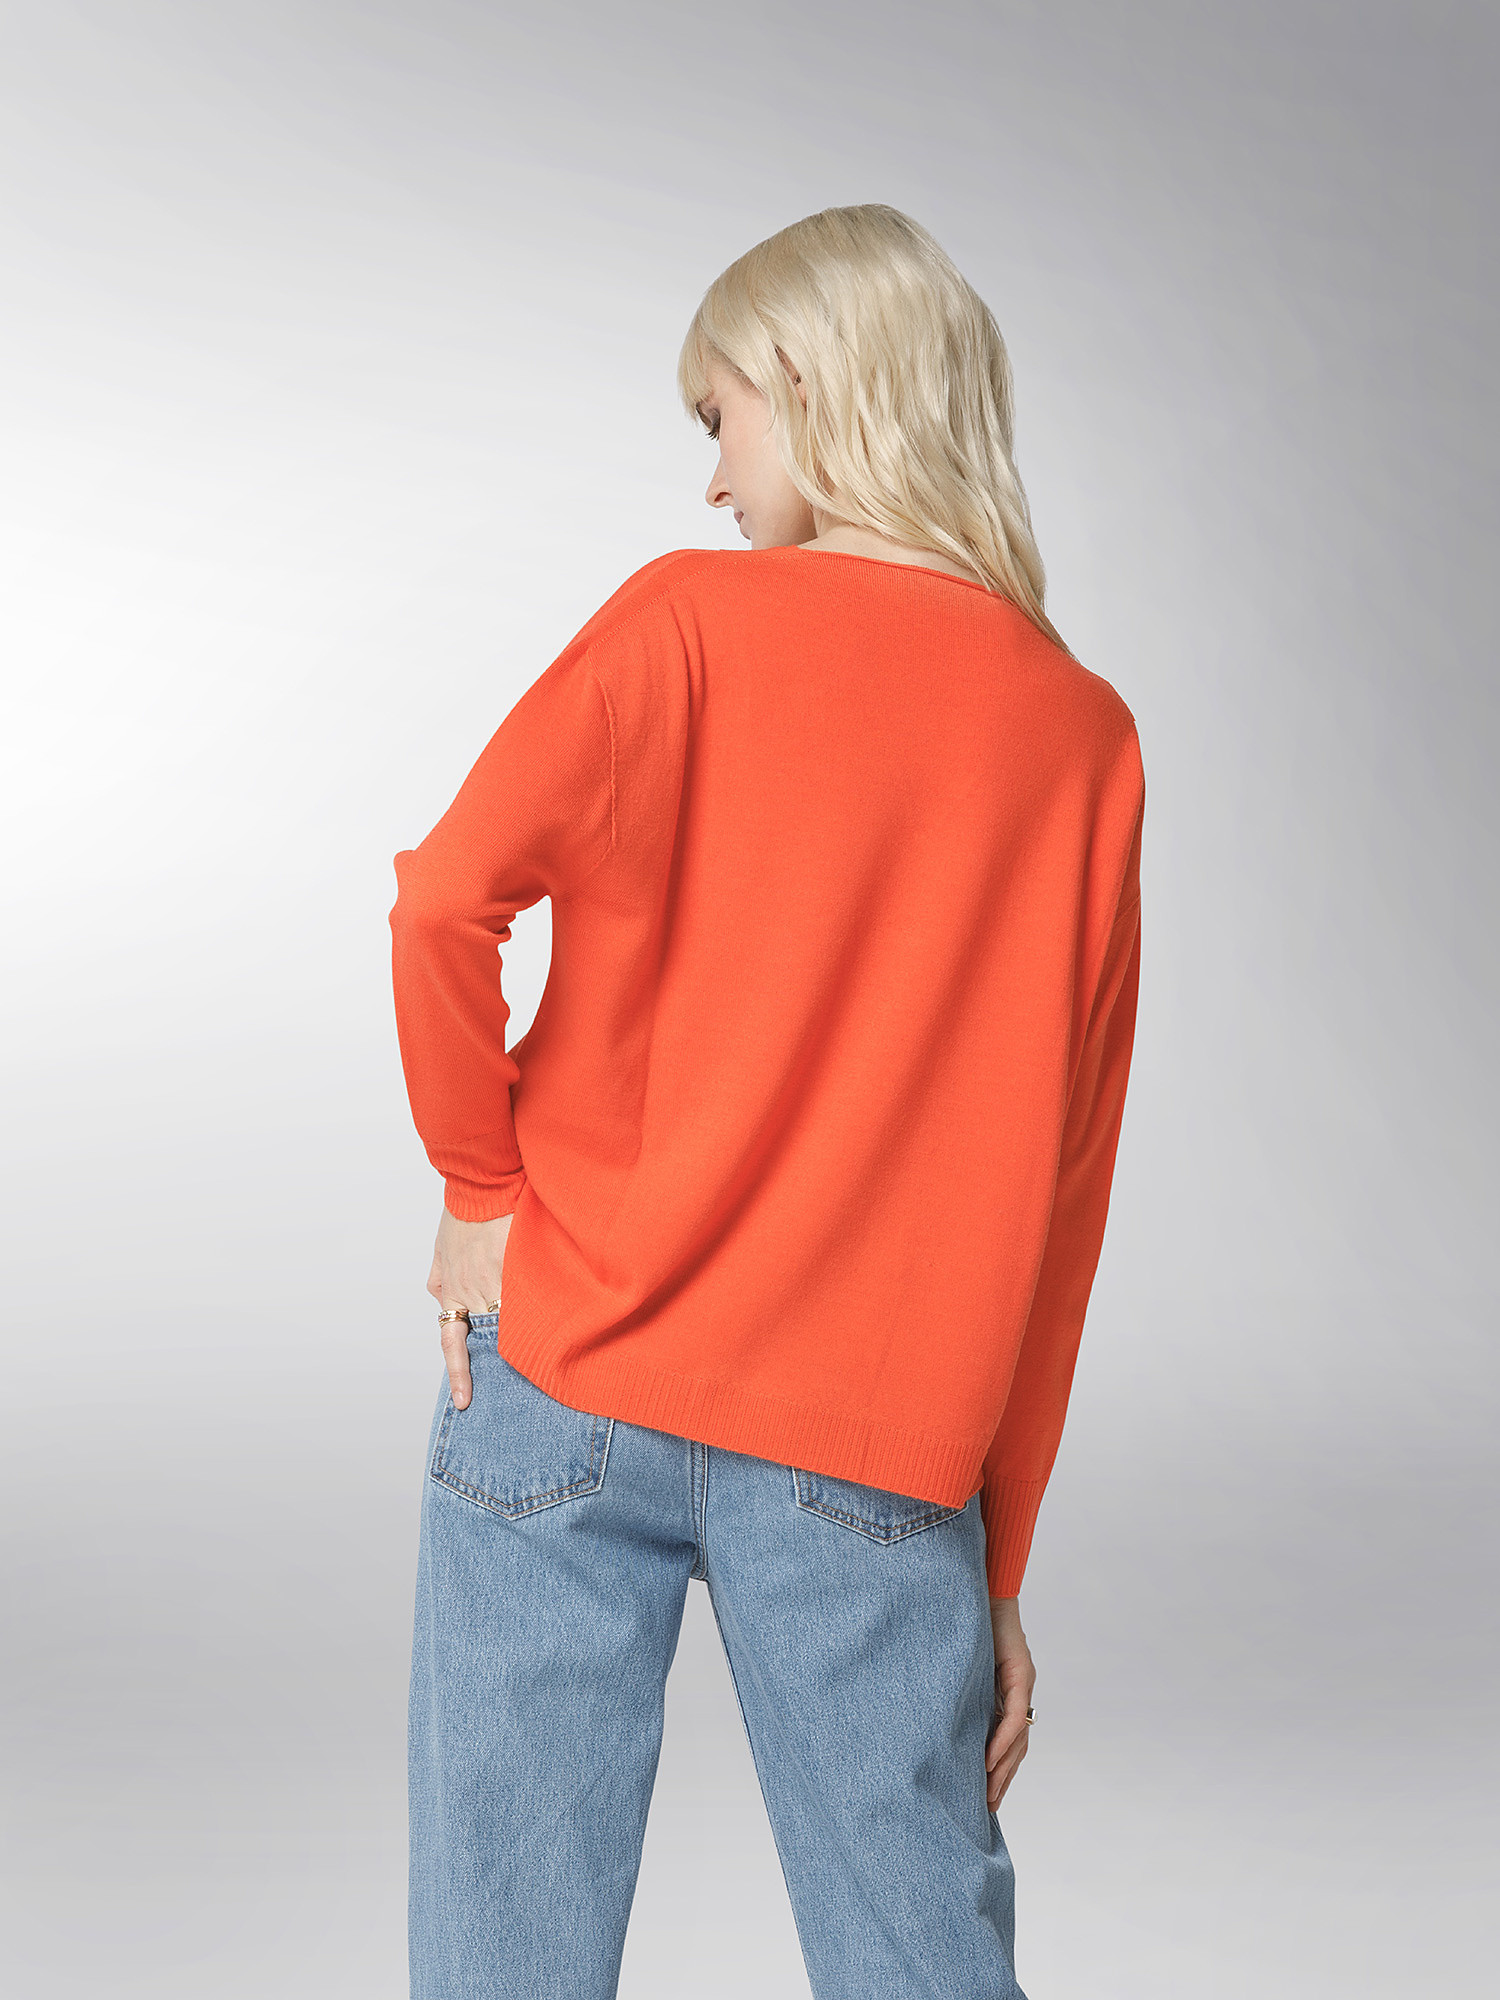 K Collection - V-neck sweater, Orange, large image number 4